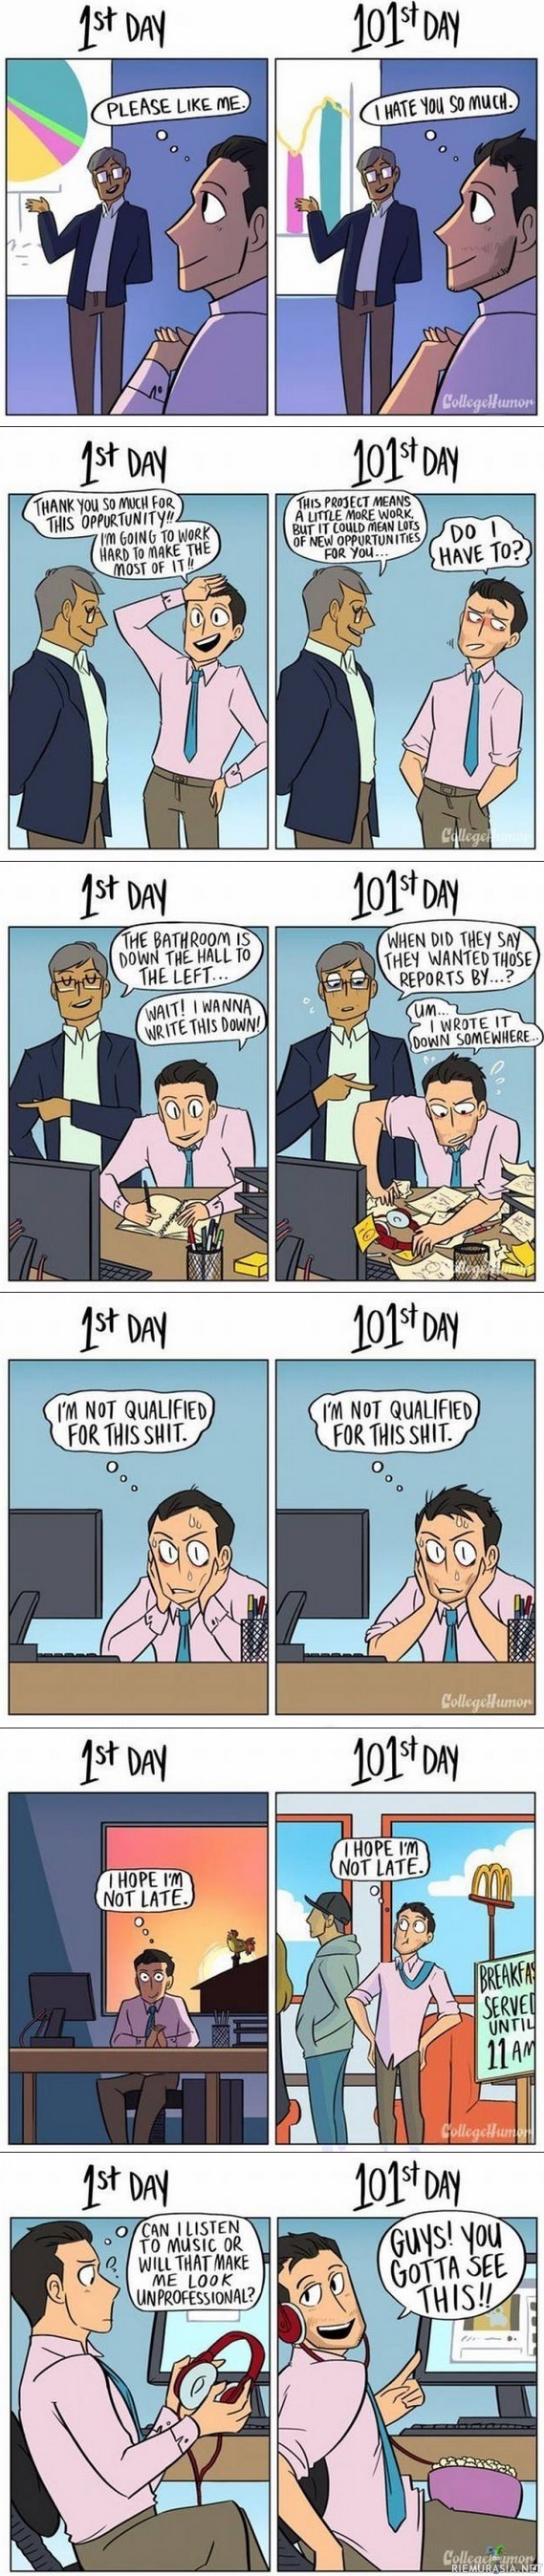 Töissä - 1 vs 101 päivä